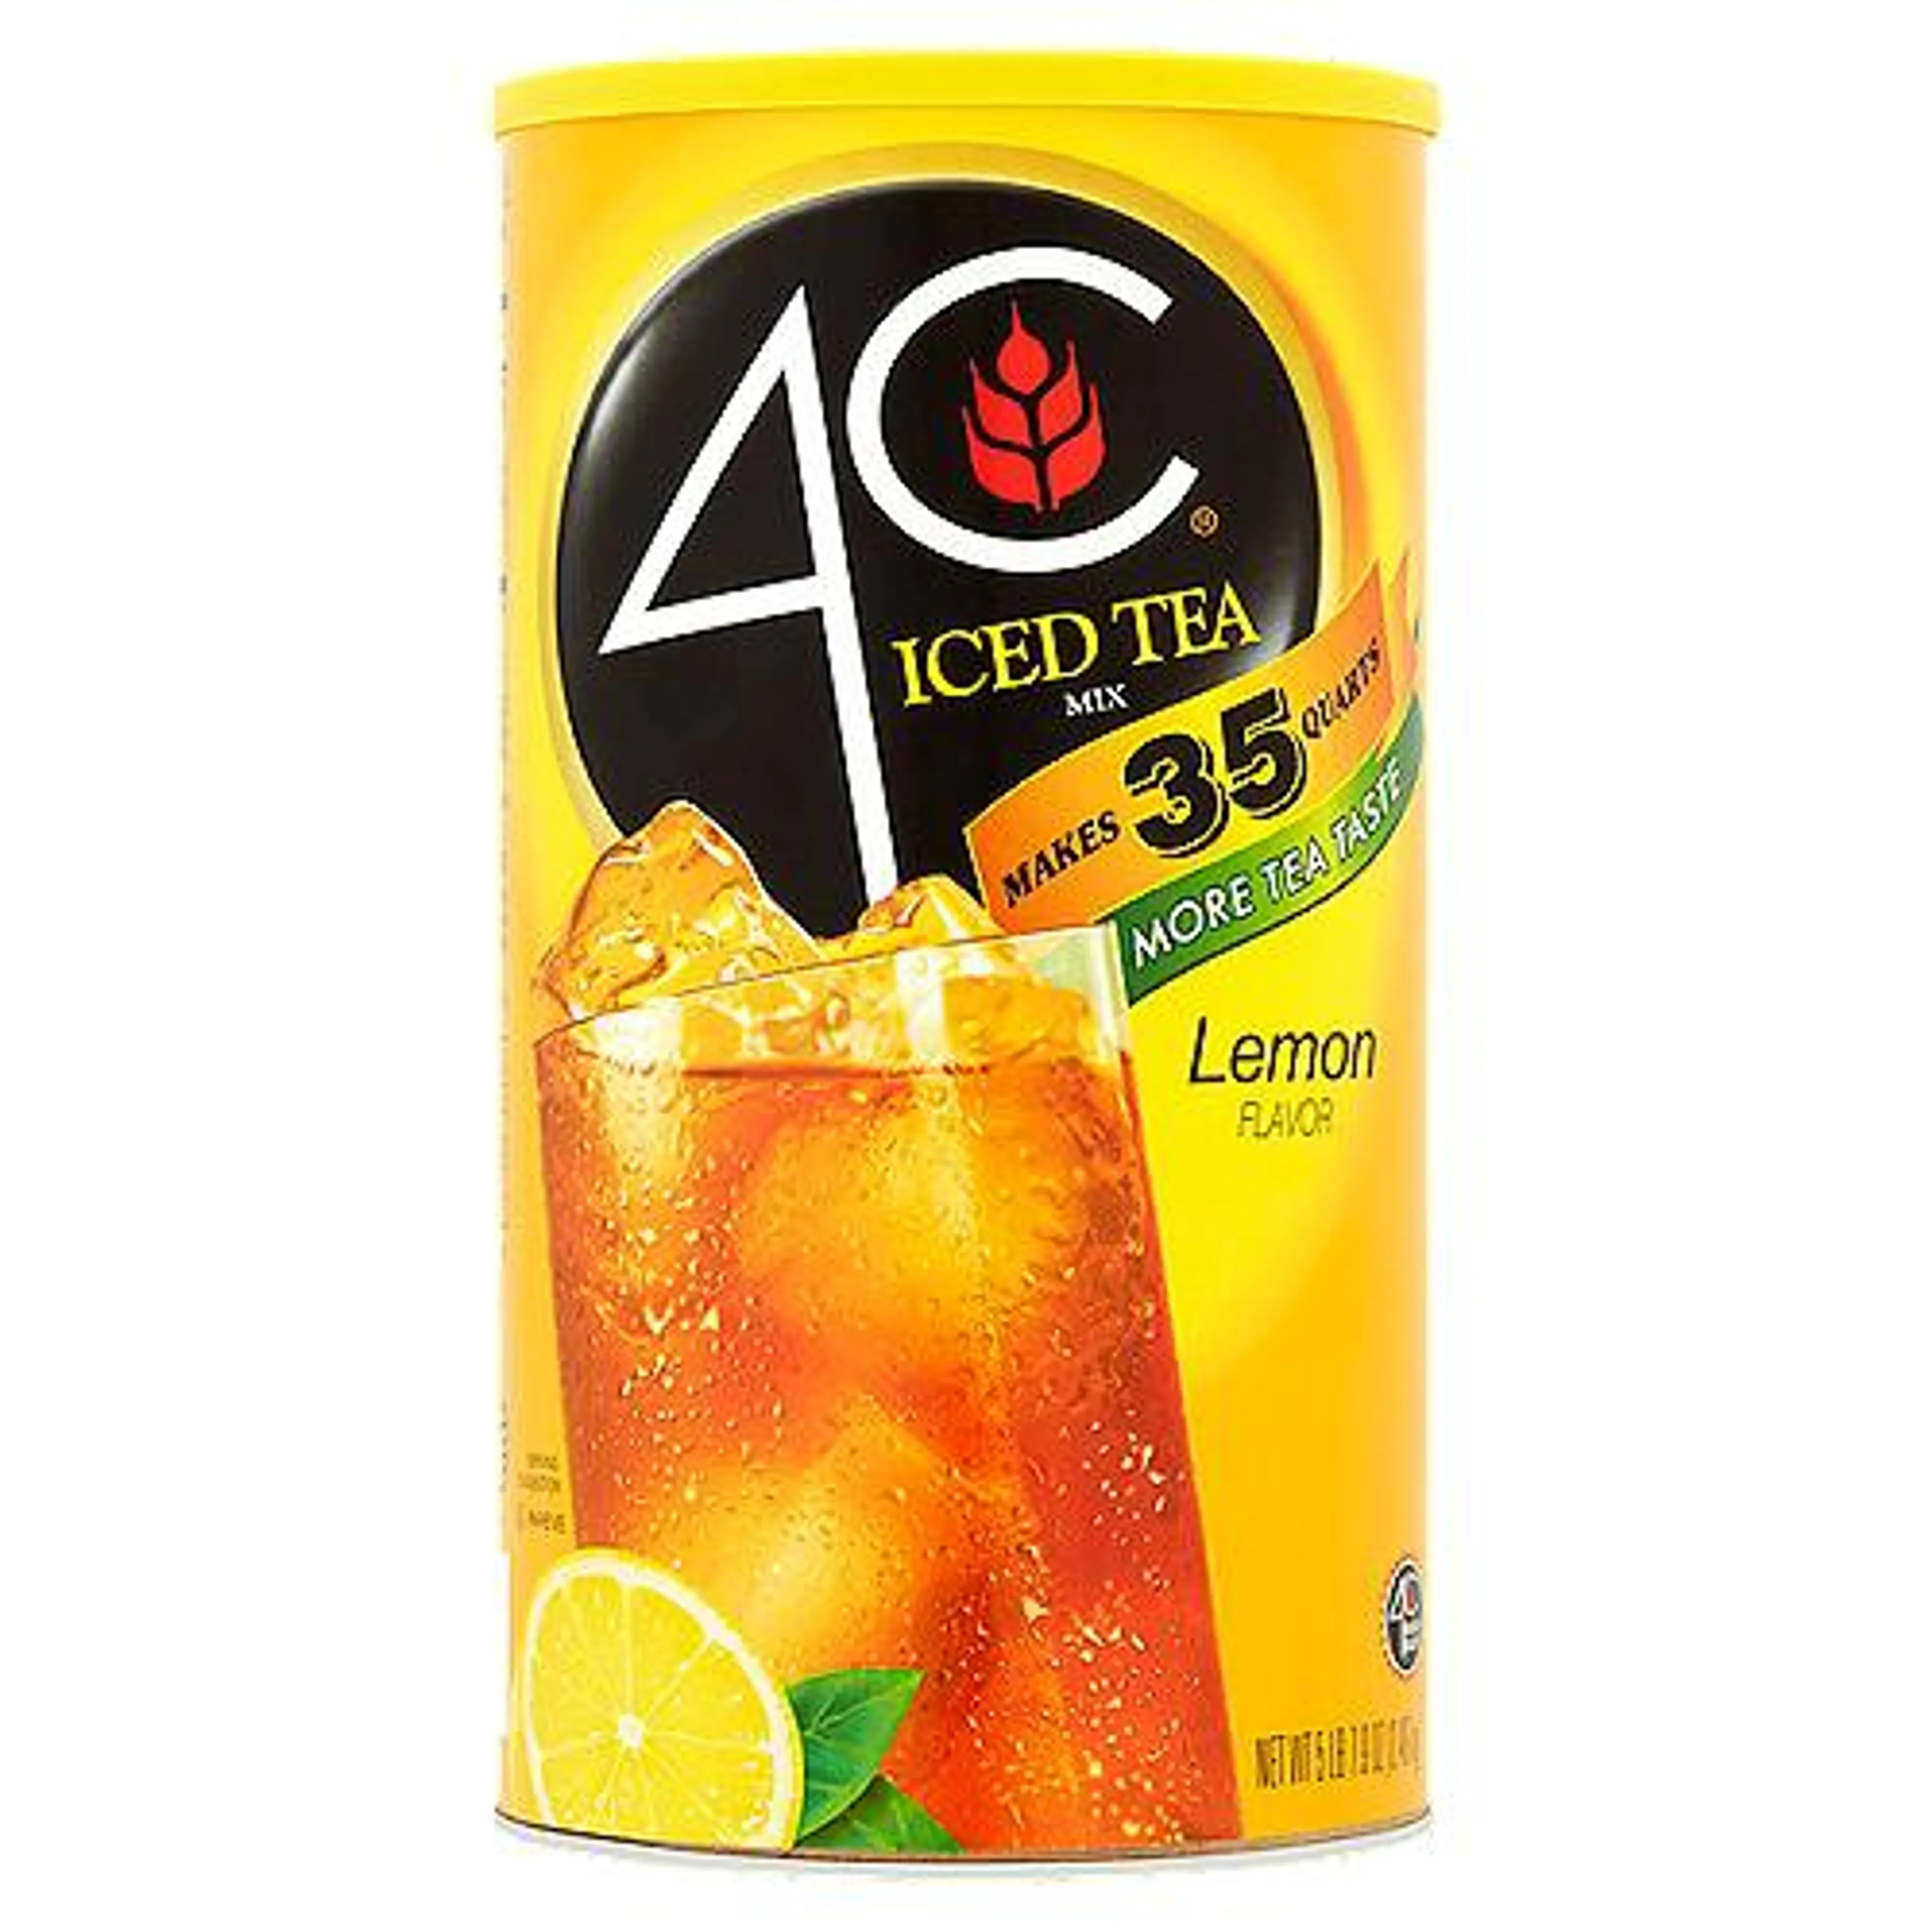 4C Lemon Flavor, Iced Tea Mix, 82.6 Ounce